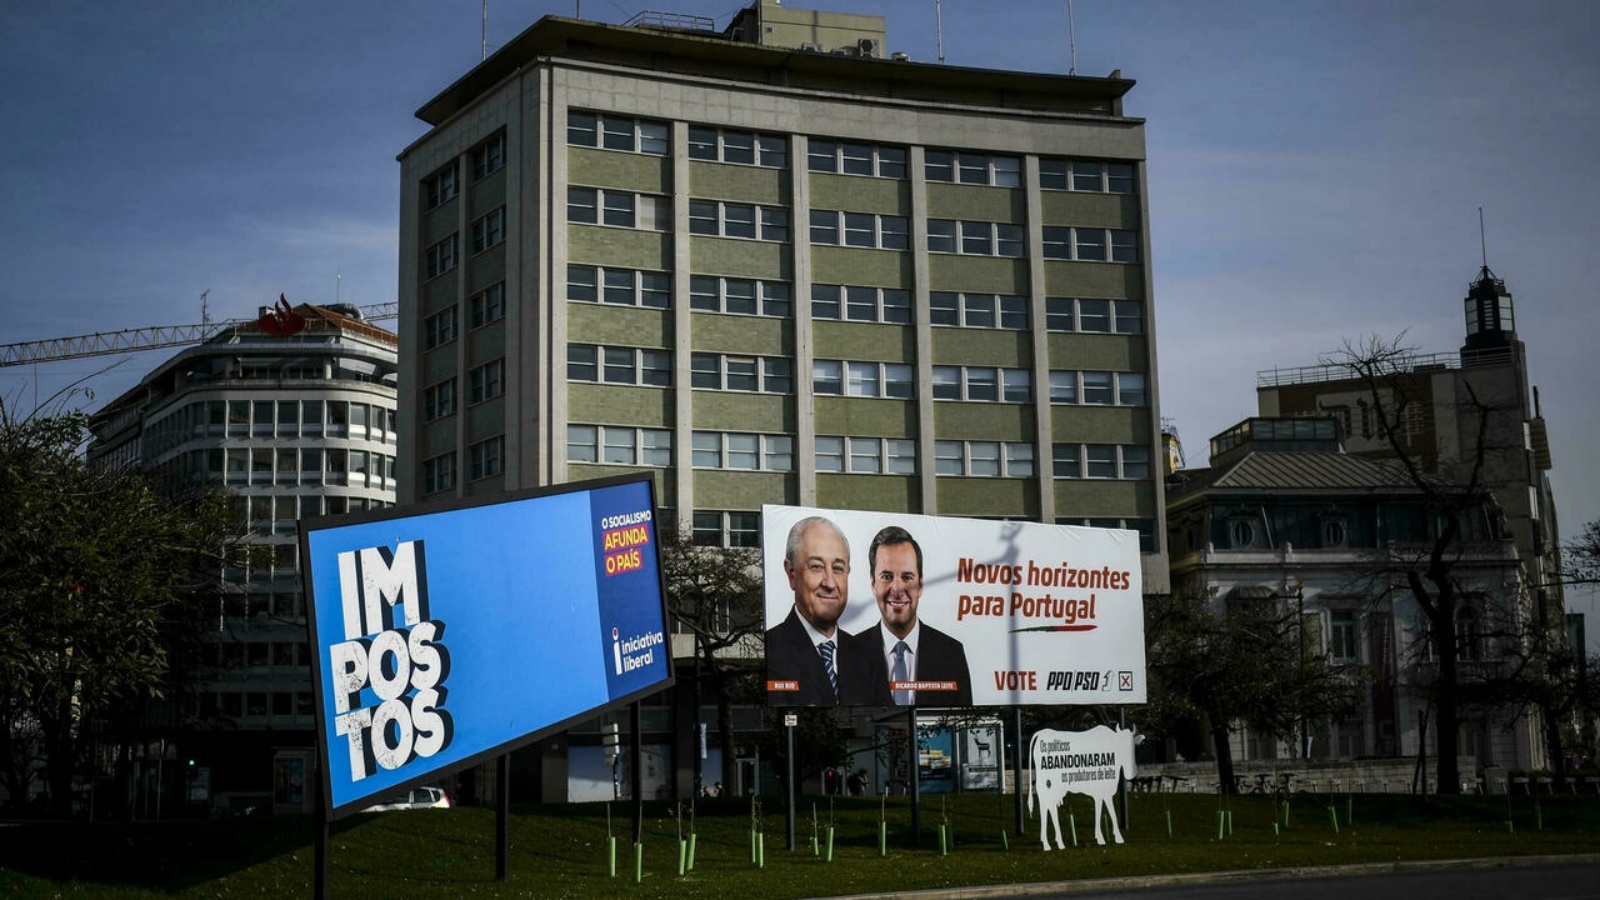 لافتة ضمن الحملات الانتخابية في لشبونة بتاريخ 16 يناير 2022 